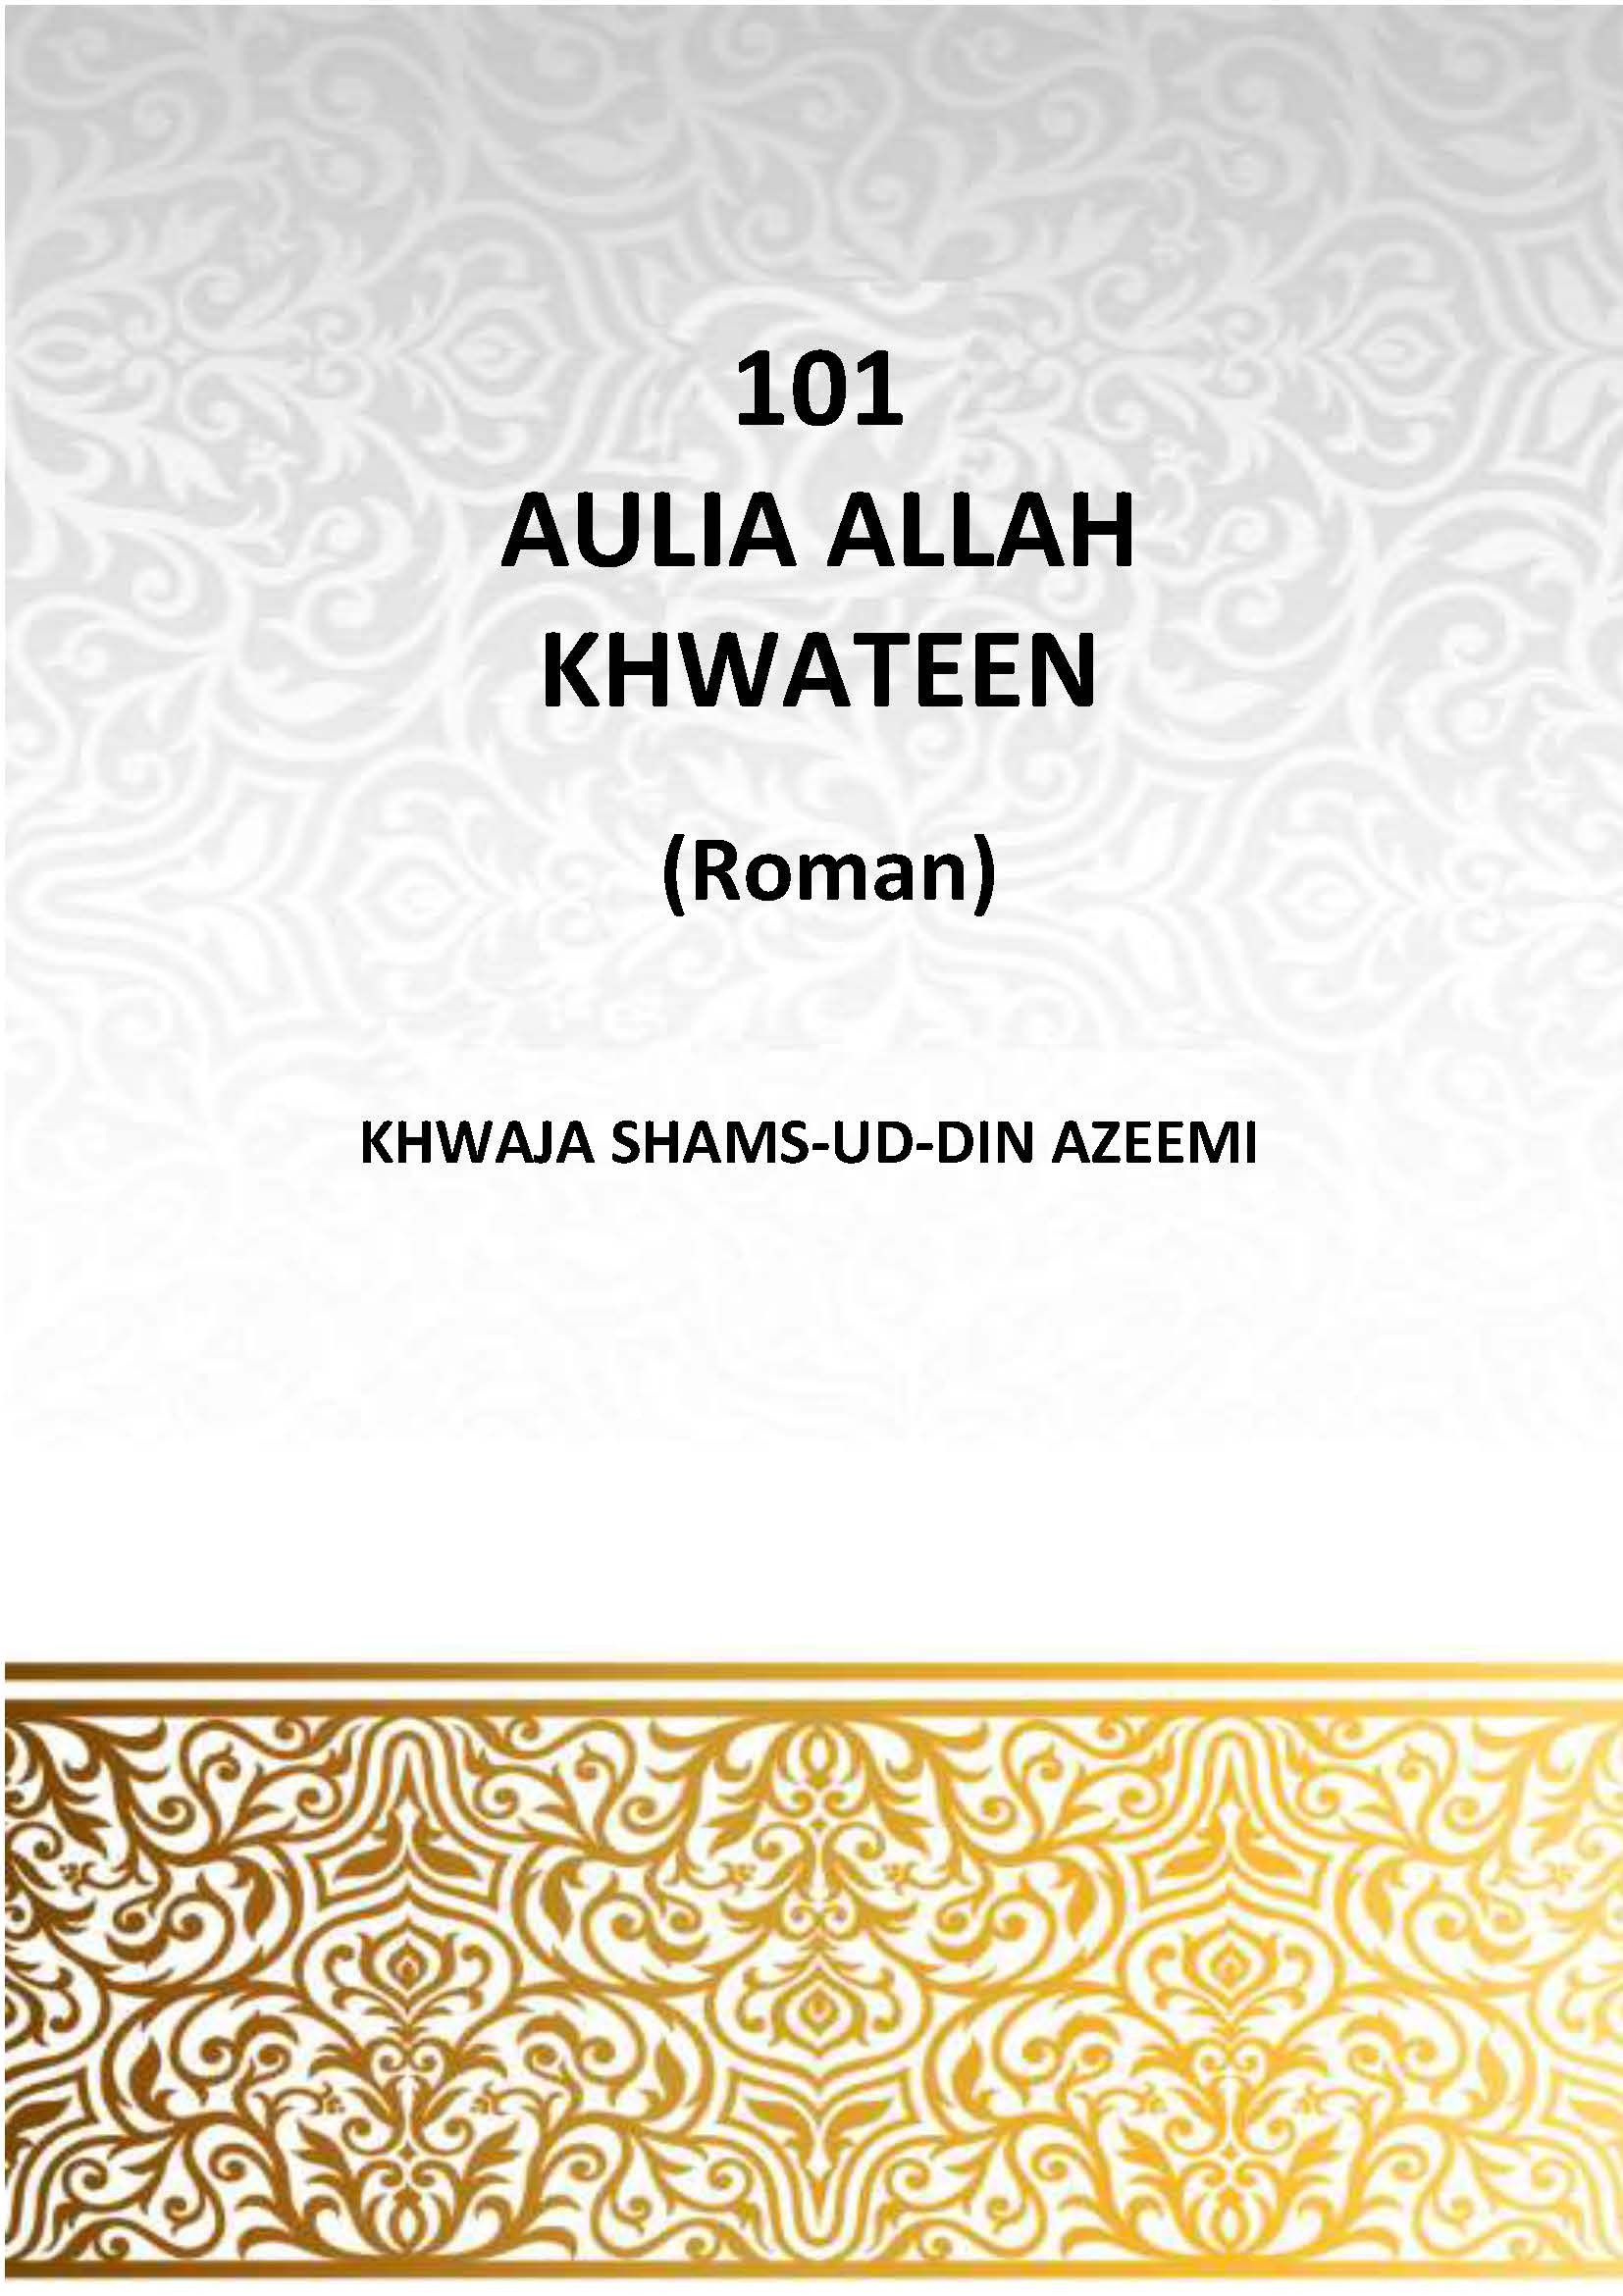 101 AULIA ALLAH KHAWATEEN (Roman)